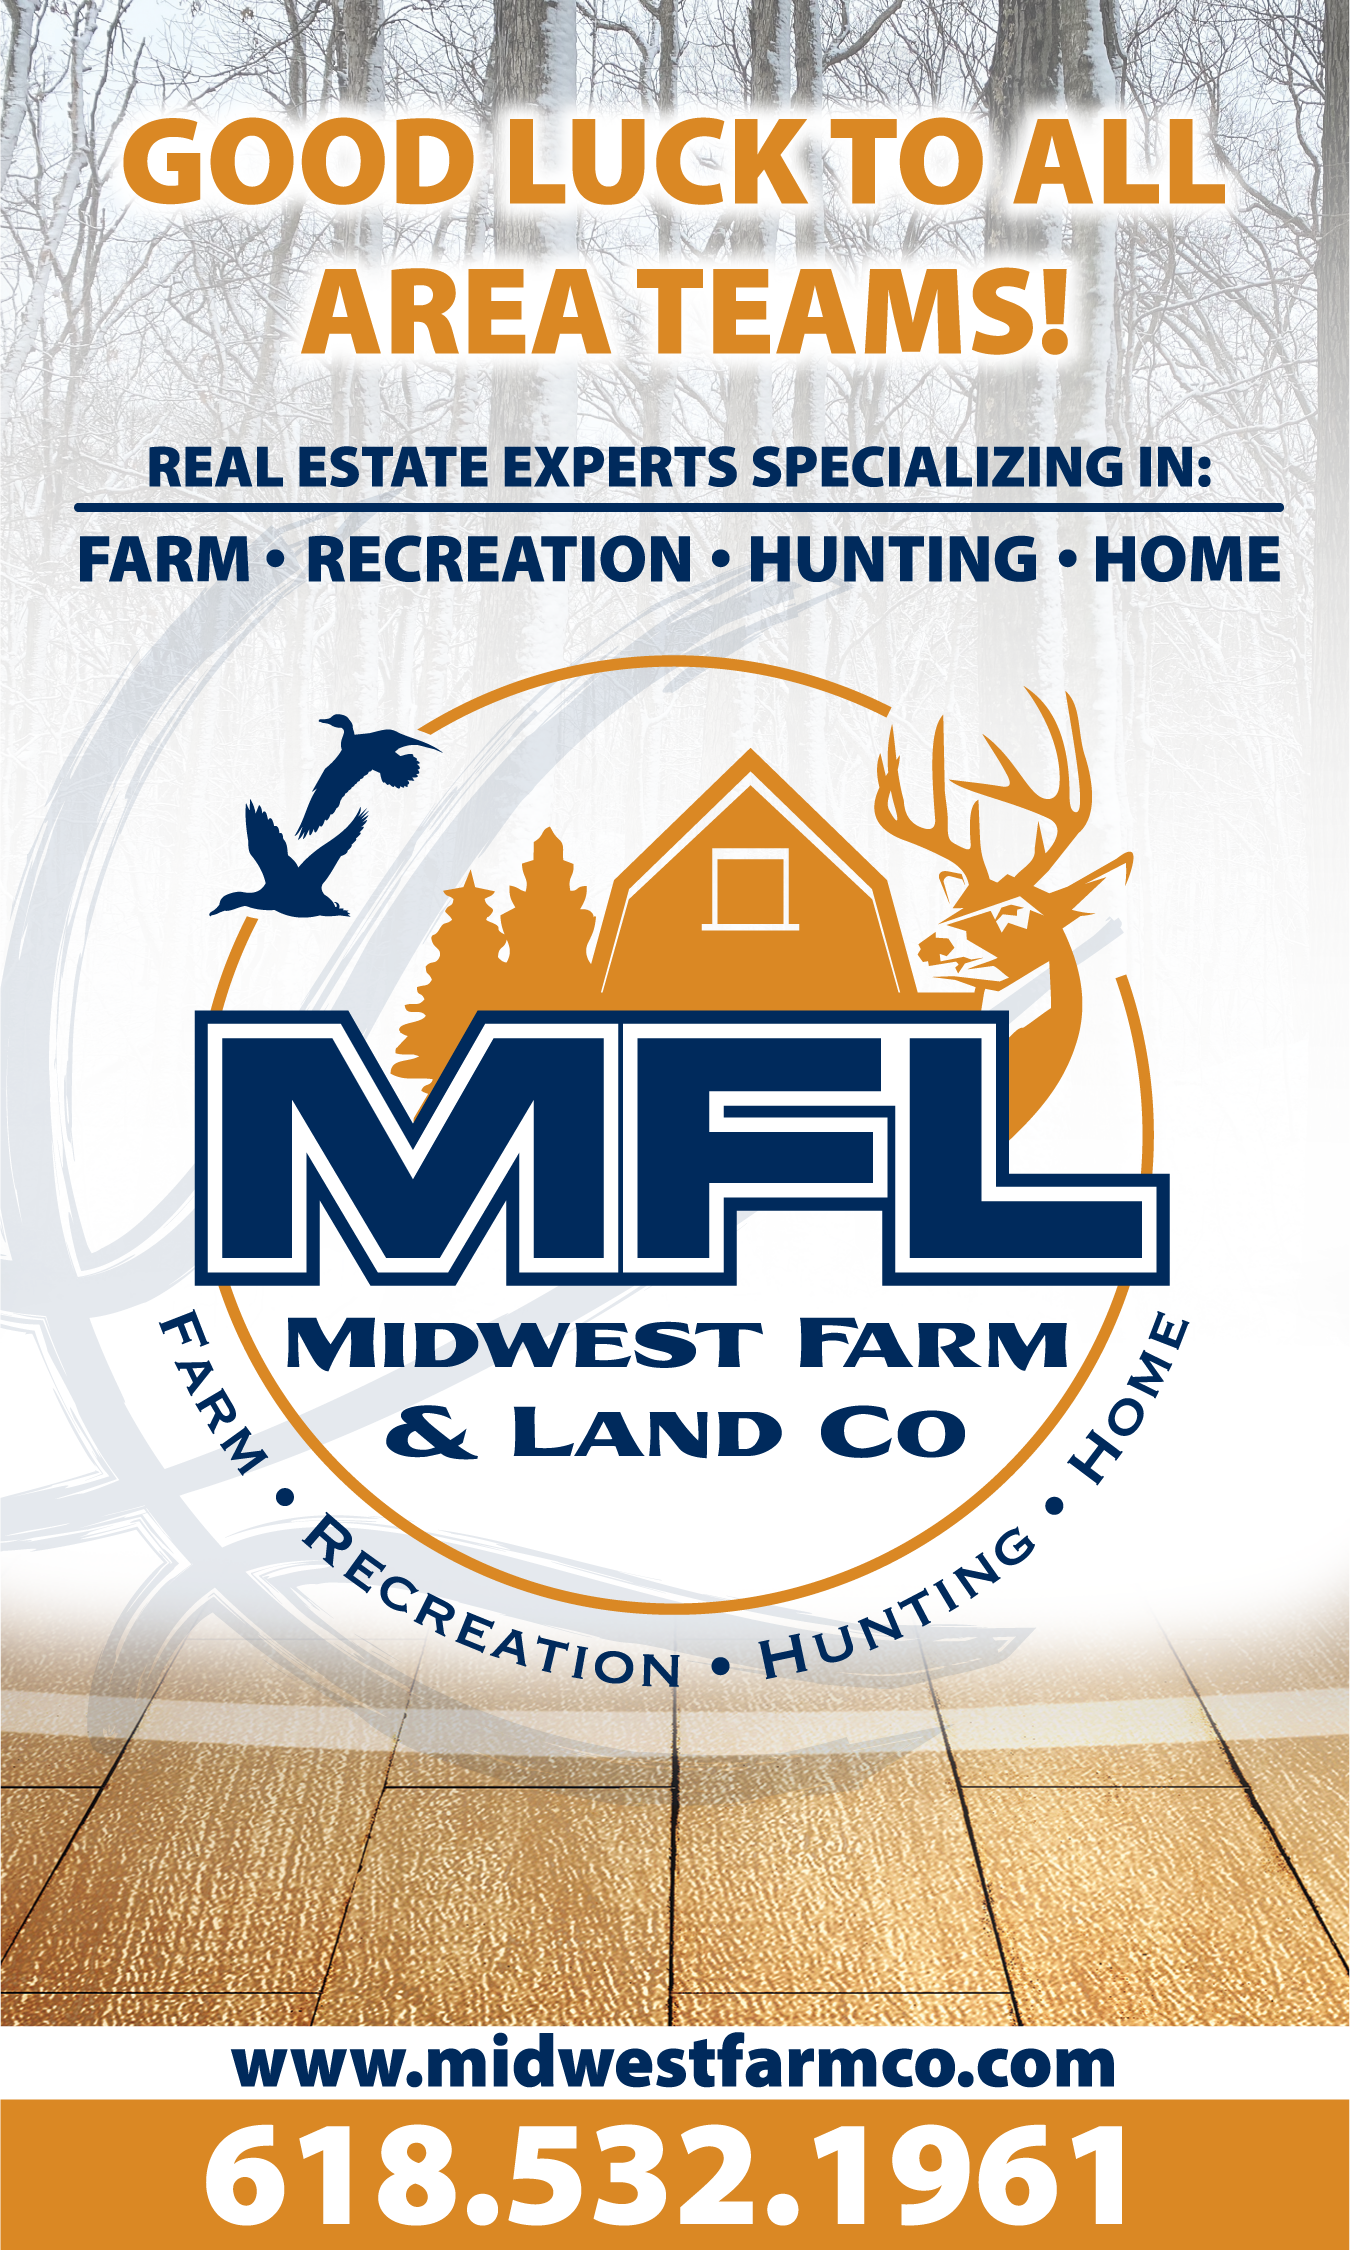 Midwest Farm & Land